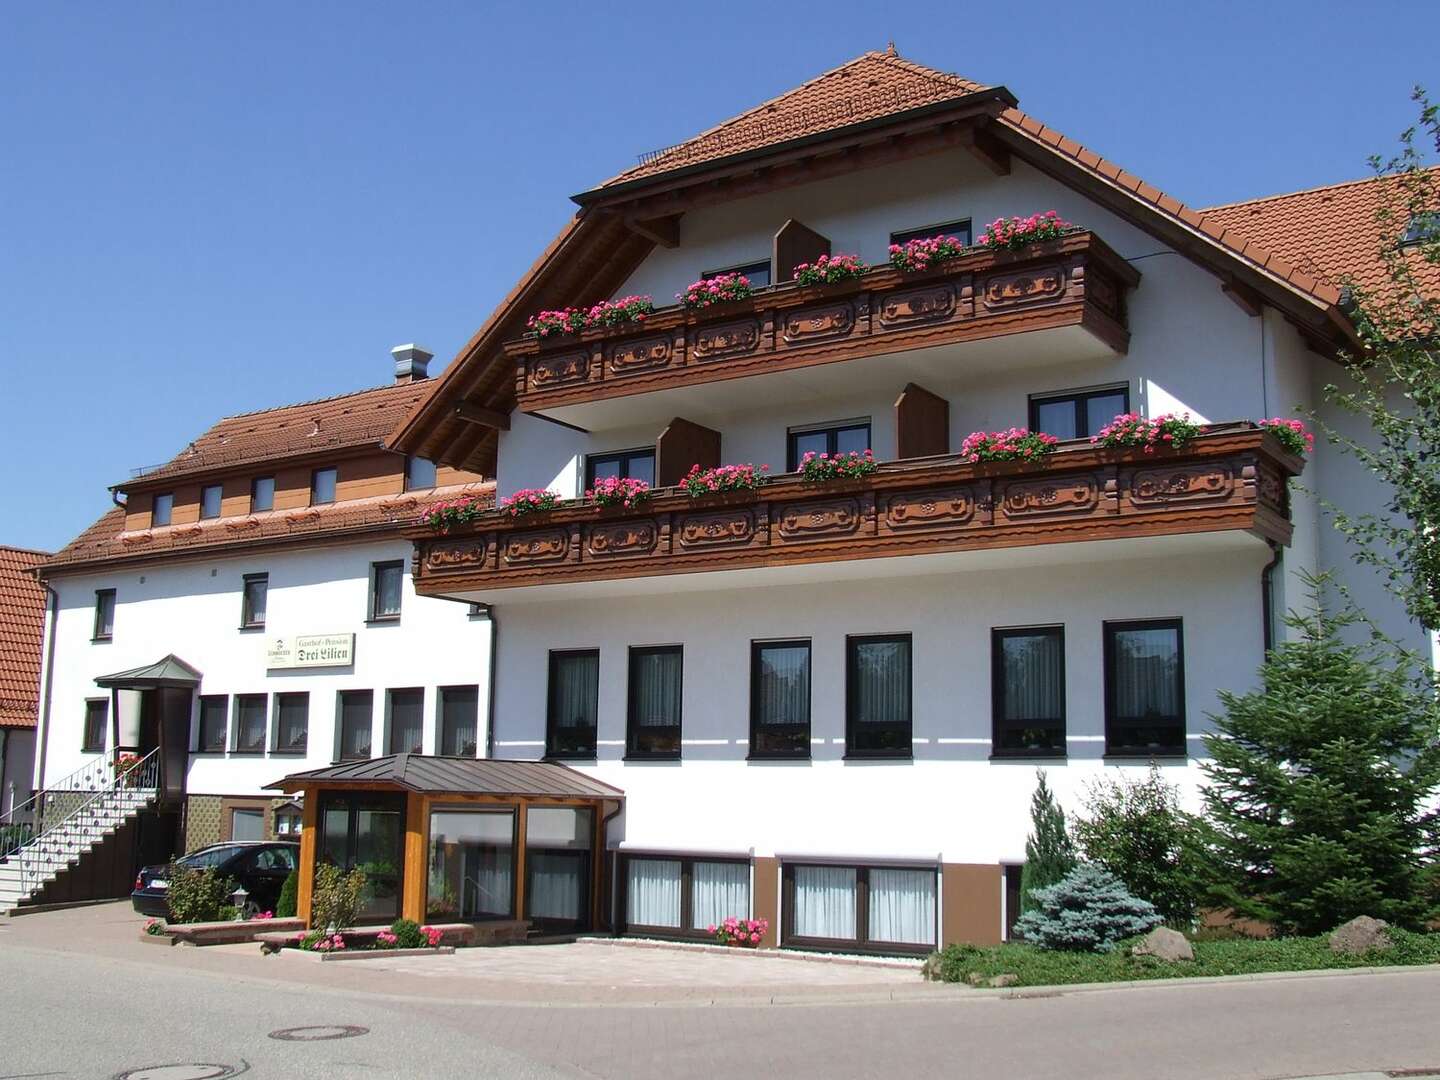 Hotel und Restaurant Drei Lilien - Gutbürgerliche Küche und Biergarten nach der Führung auf der Stutenmilchfarm